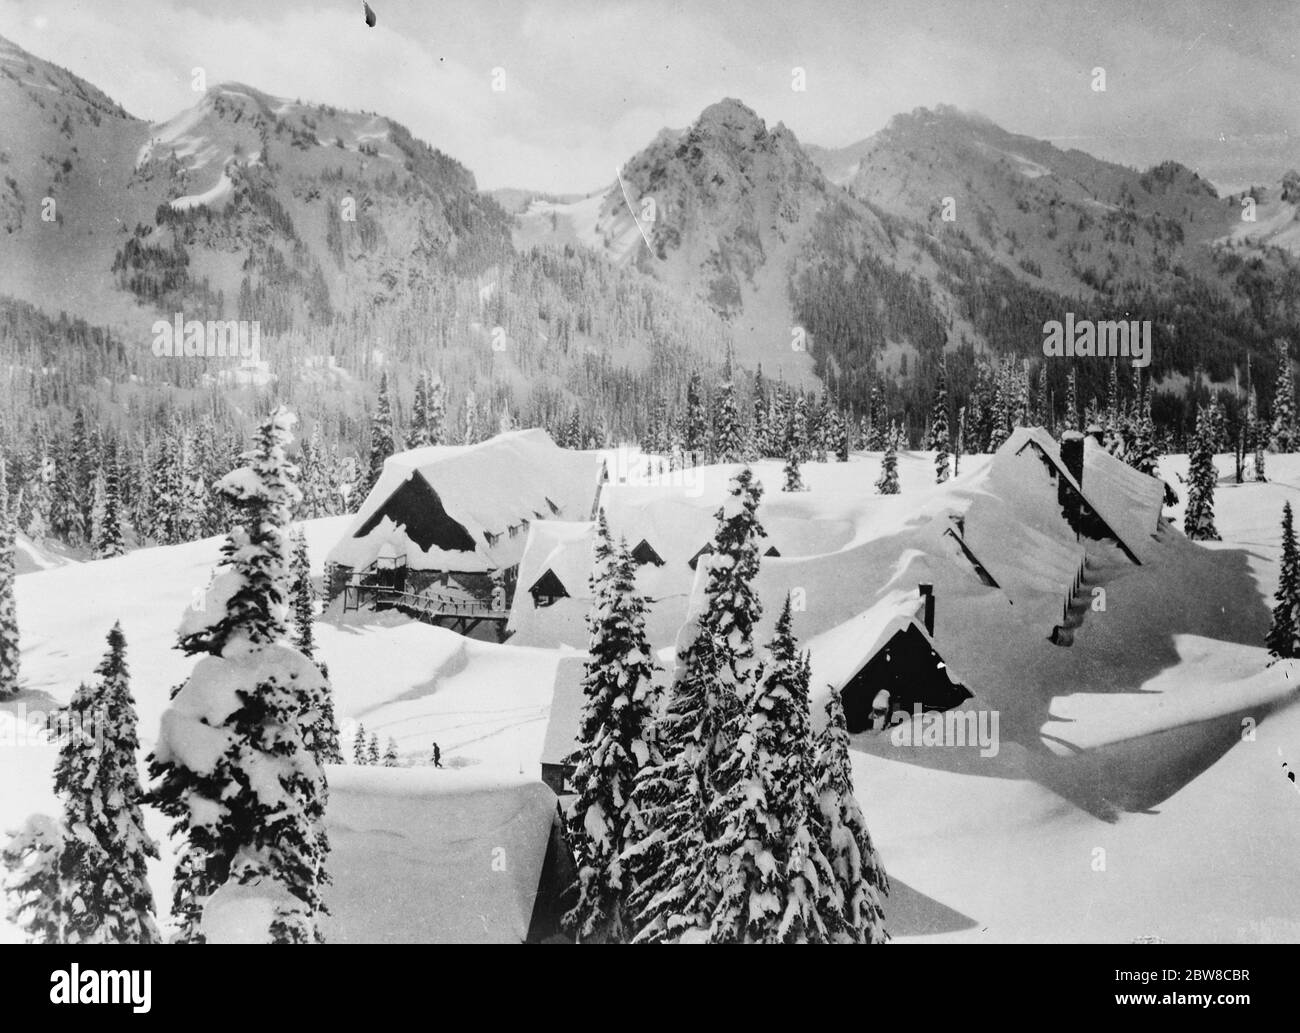 Amerika ' s Rekord Winter . Ein Foto von Rainier National Park, Washington, zeigt Paradise Inn, das beliebte Wintersportzentrum, fast unter Schnee begraben 22ft in der Tiefe. 15 Februar 1927 Stockfoto